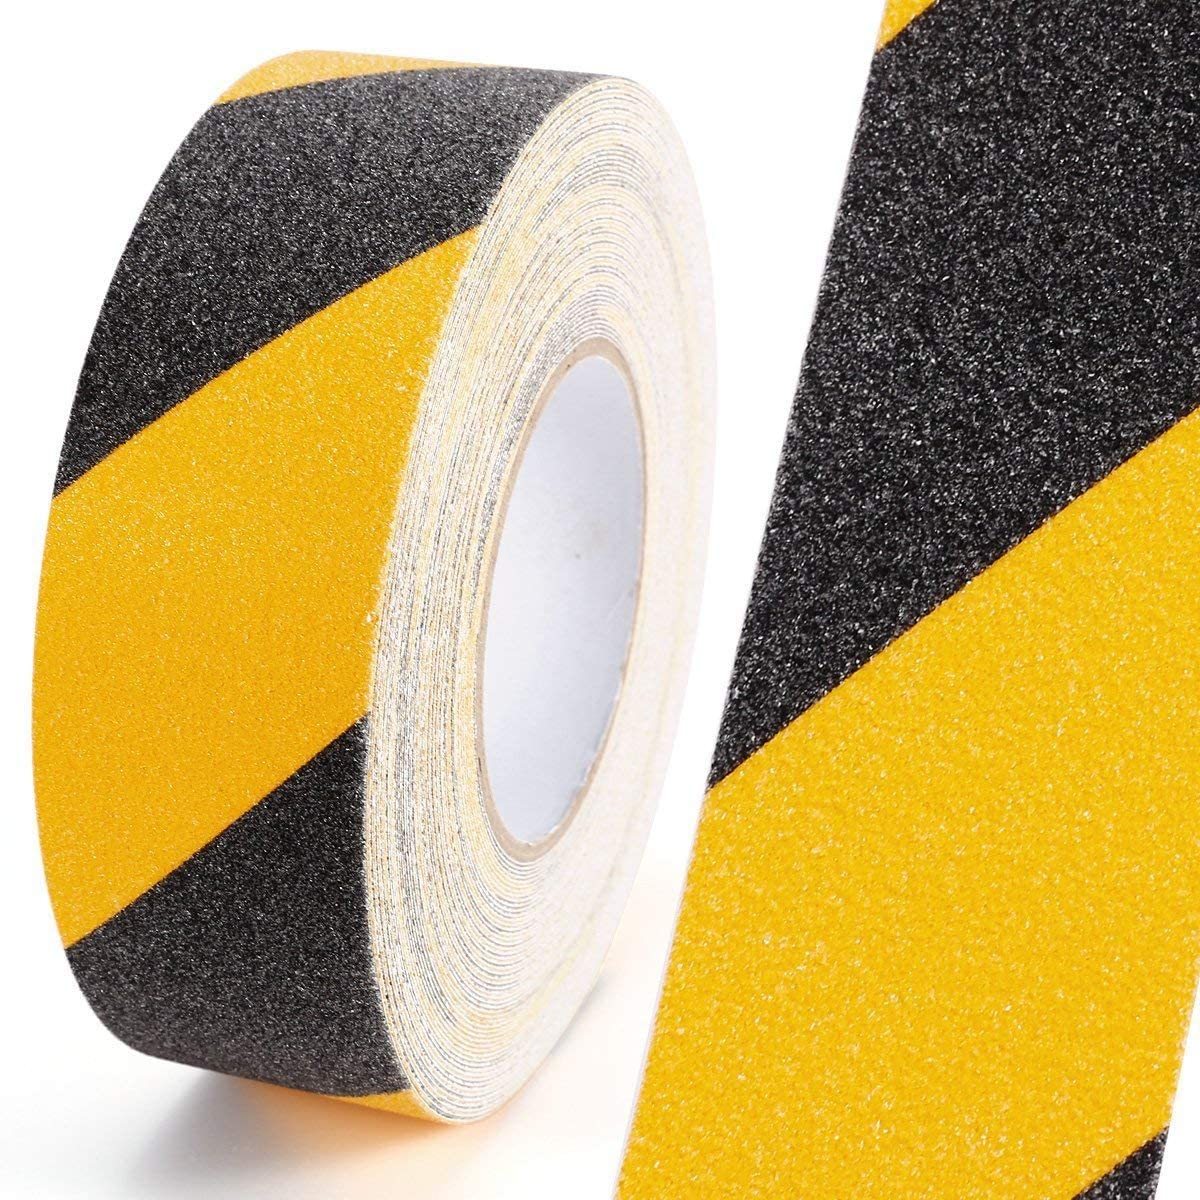 Anti Slip Tape- Black/Yellow (5M x 50MM) Anti Skid Tape- #Royalkart#anti skid adhesive tape